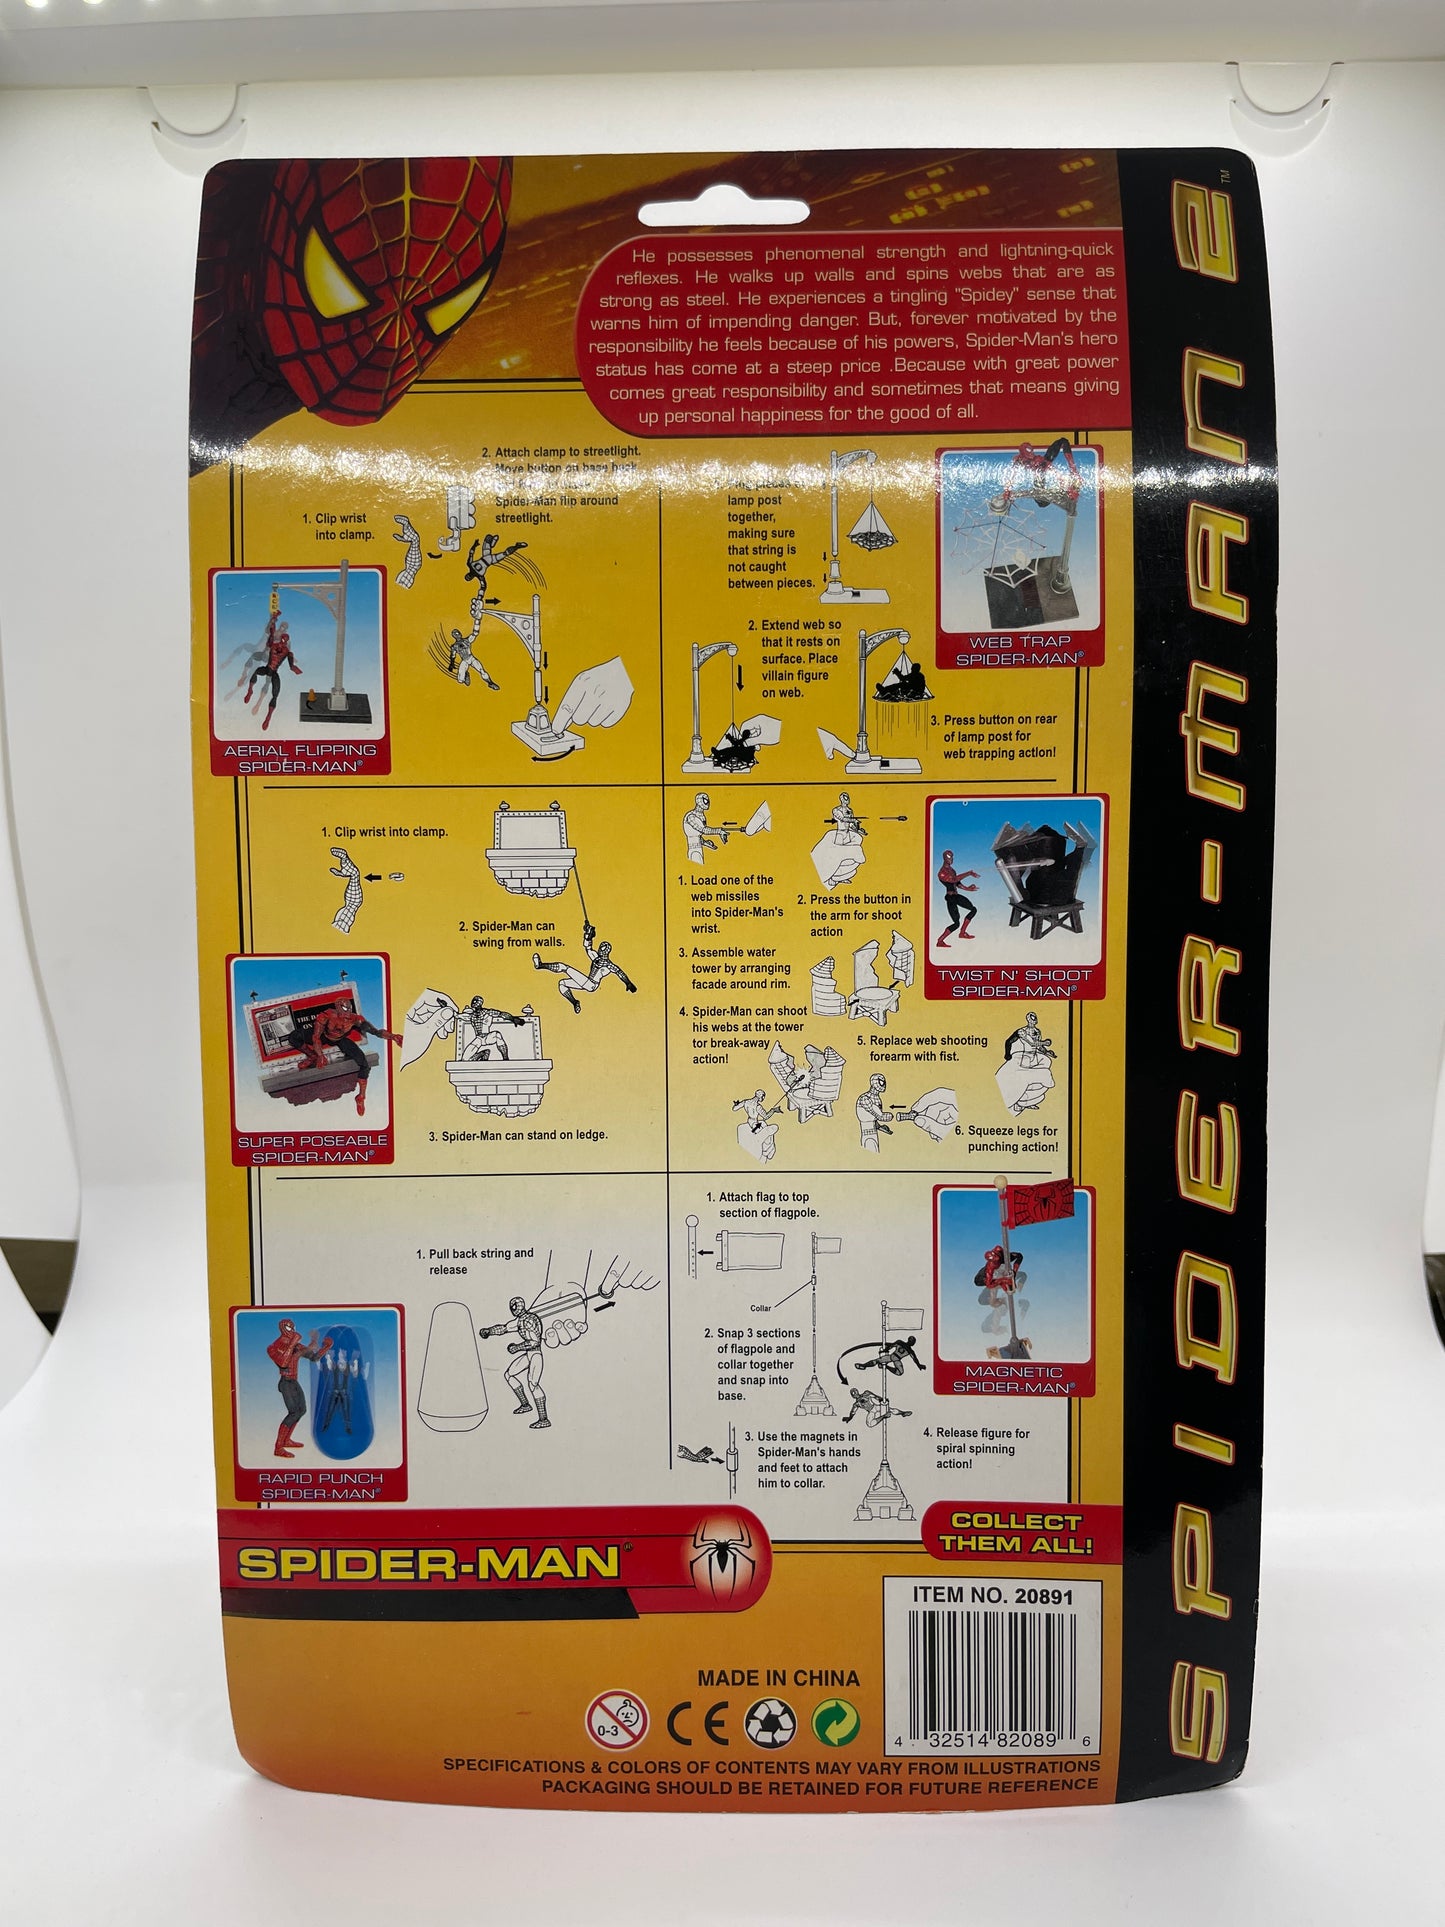 Spider-Man 2 Official Movie Merchandise Spider-Man Action Figure 2004